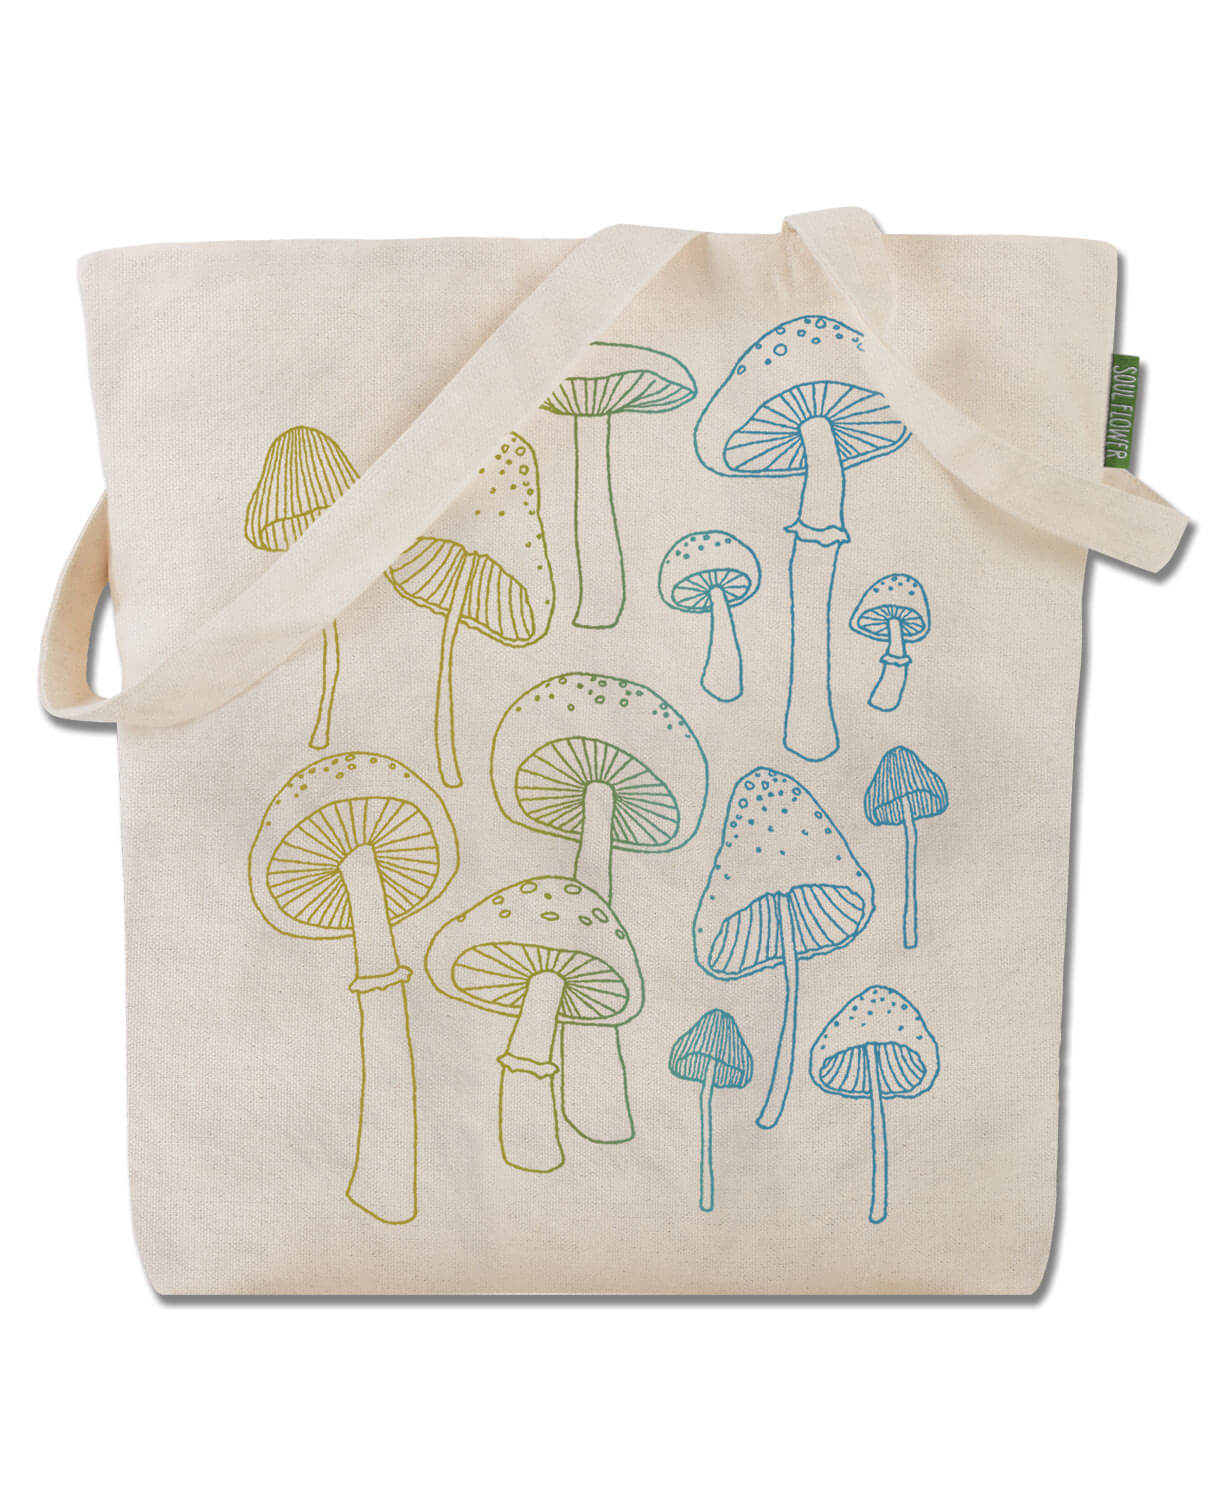 NEW! Mushrooms Eco Tote Bag